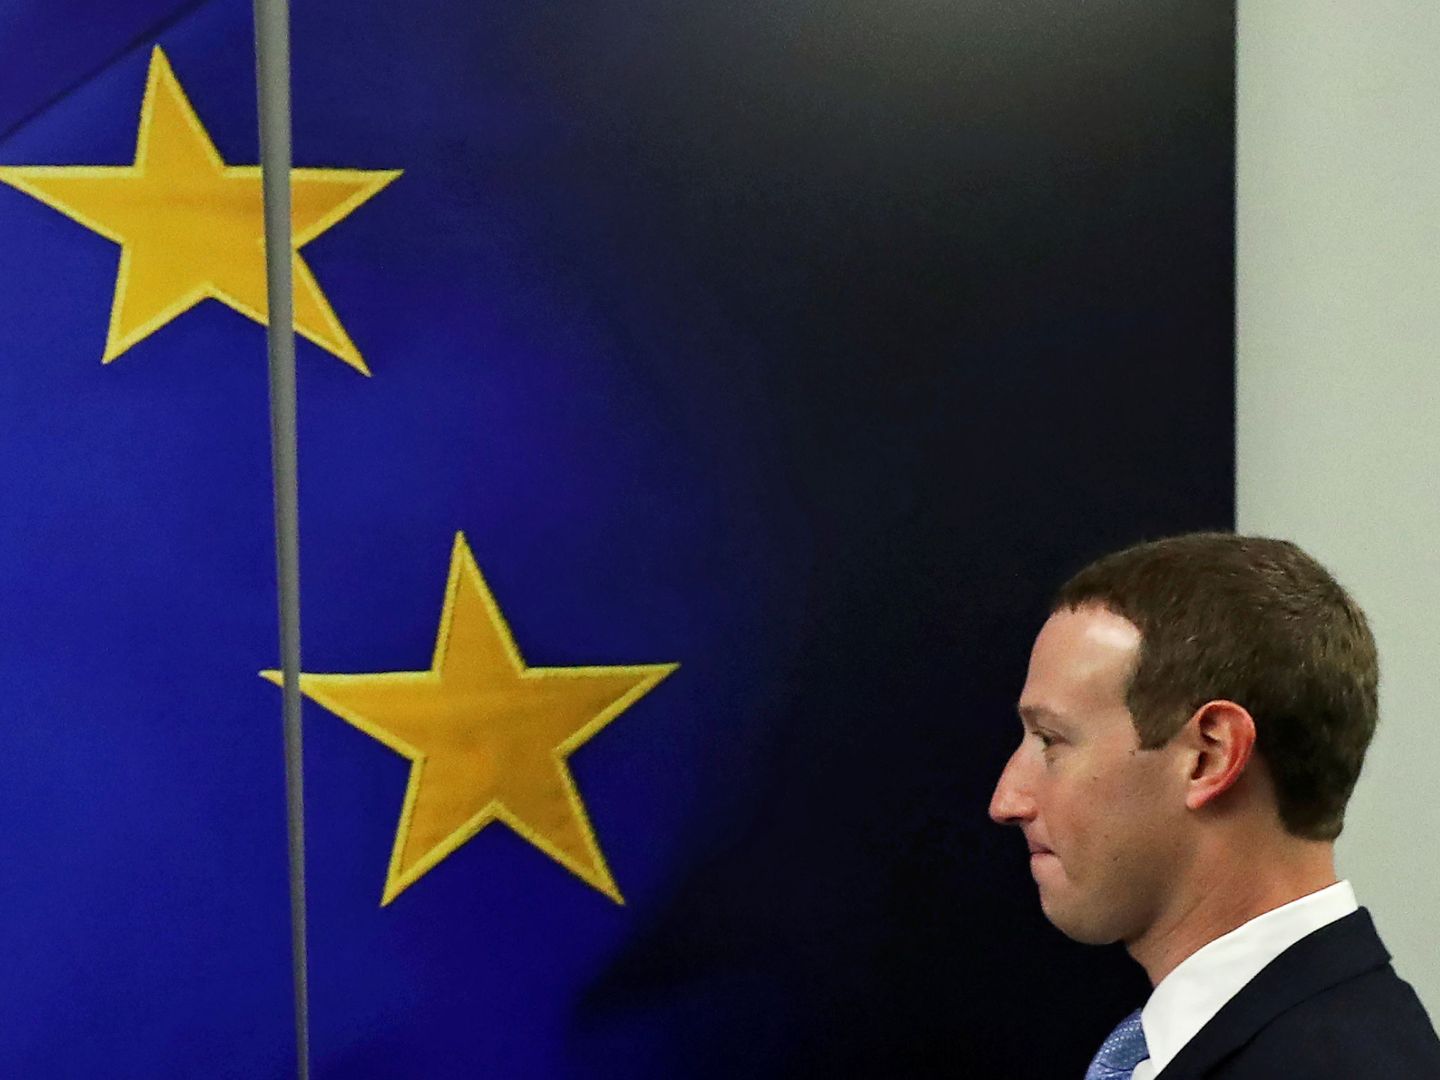 El CEO de Facebook, Mark Zuckerberg. Foto: Reuters/Yves Herman.